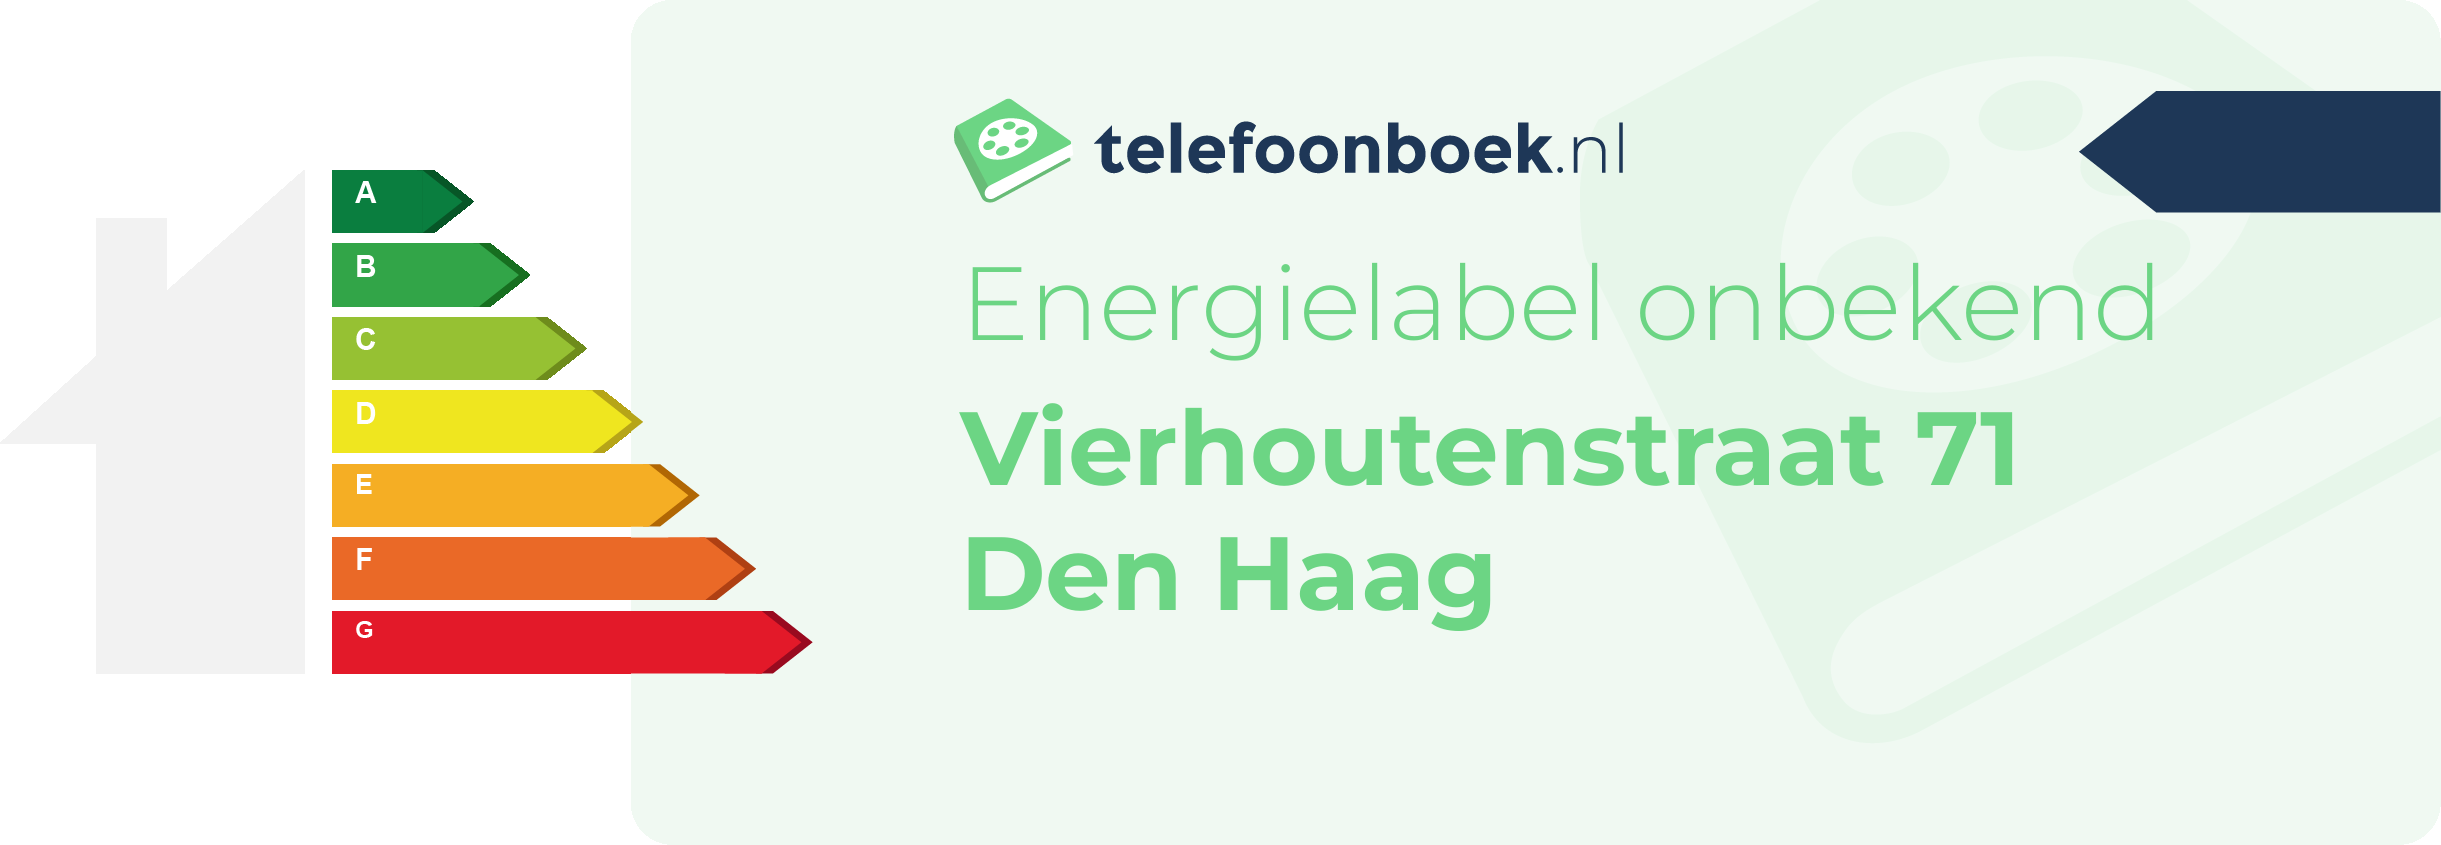 Energielabel Vierhoutenstraat 71 Den Haag